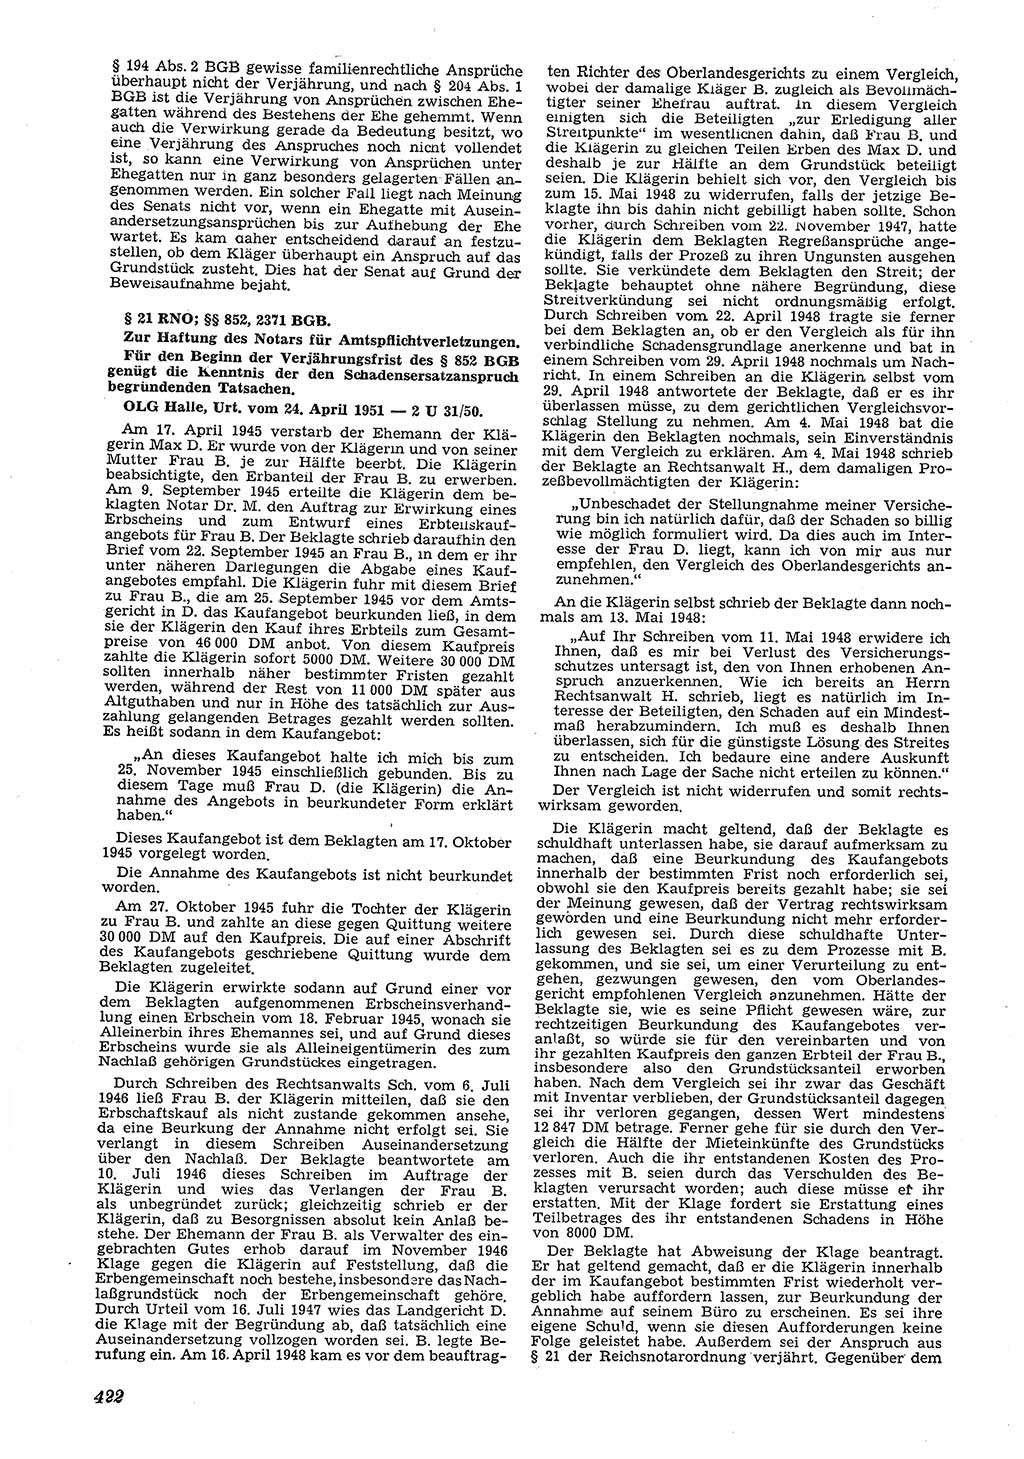 Neue Justiz (NJ), Zeitschrift für Recht und Rechtswissenschaft [Deutsche Demokratische Republik (DDR)], 5. Jahrgang 1951, Seite 422 (NJ DDR 1951, S. 422)